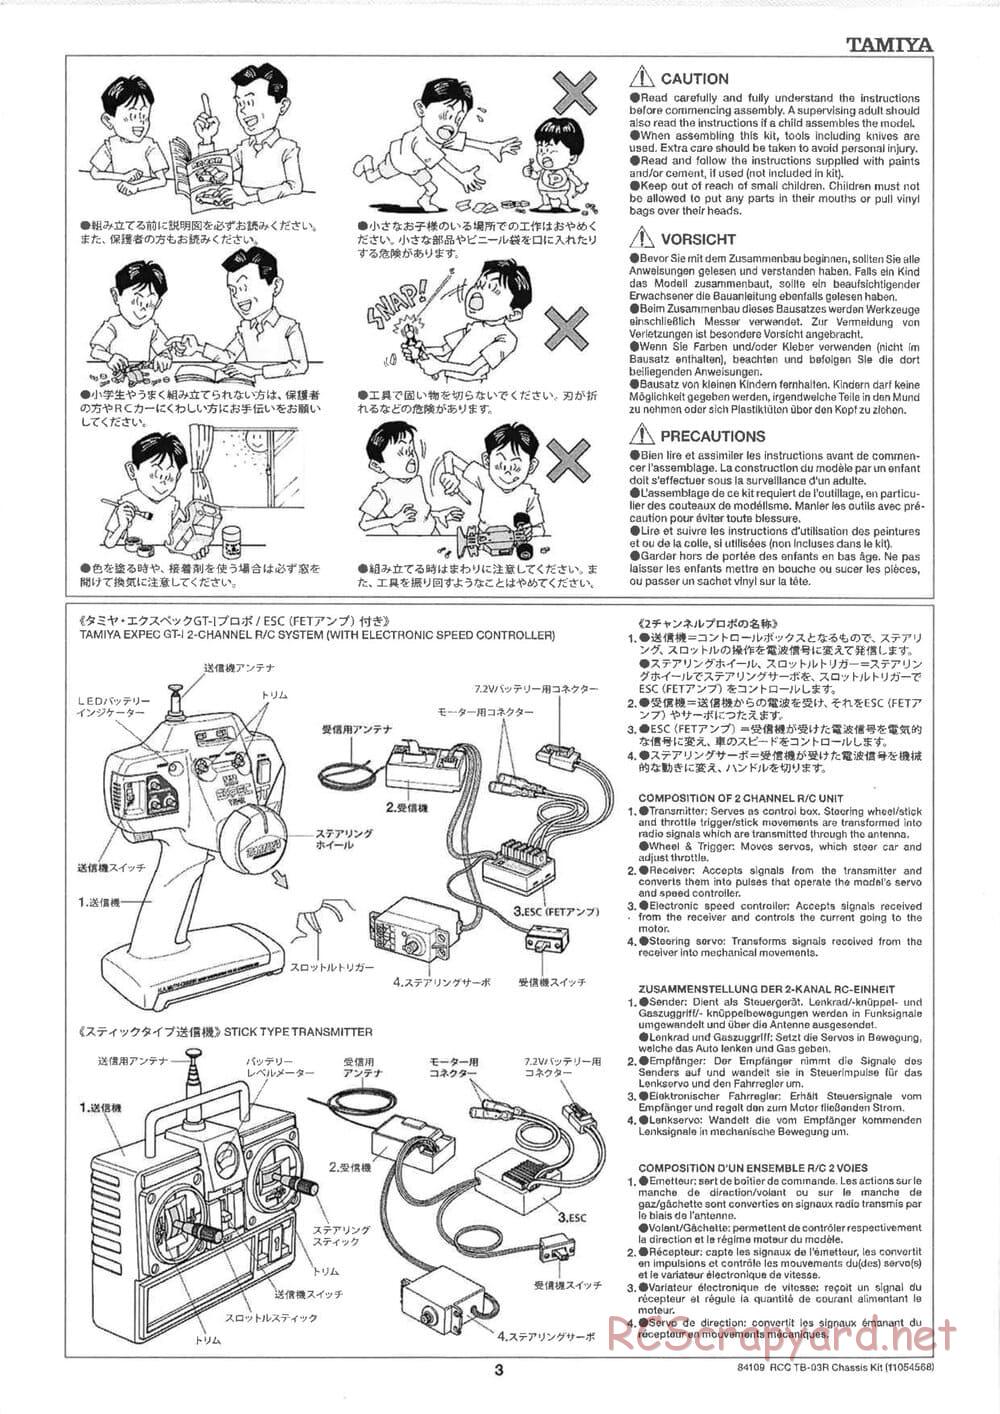 Tamiya - TB-03R Chassis - Manual - Page 3